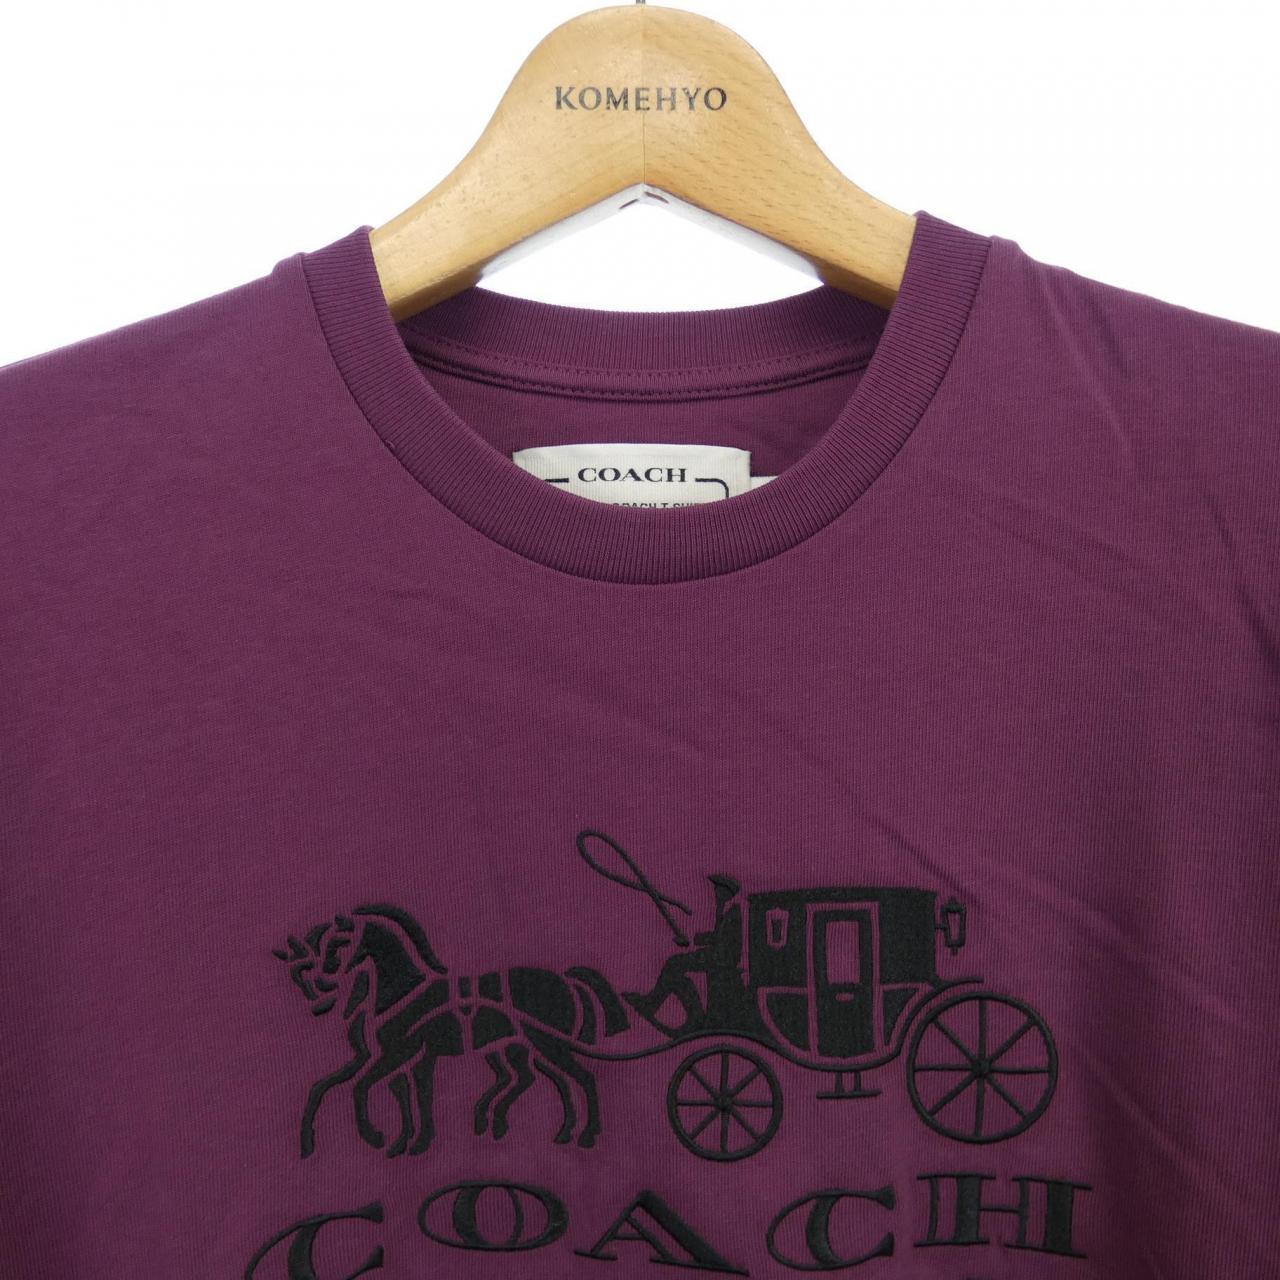 教练COACH T恤